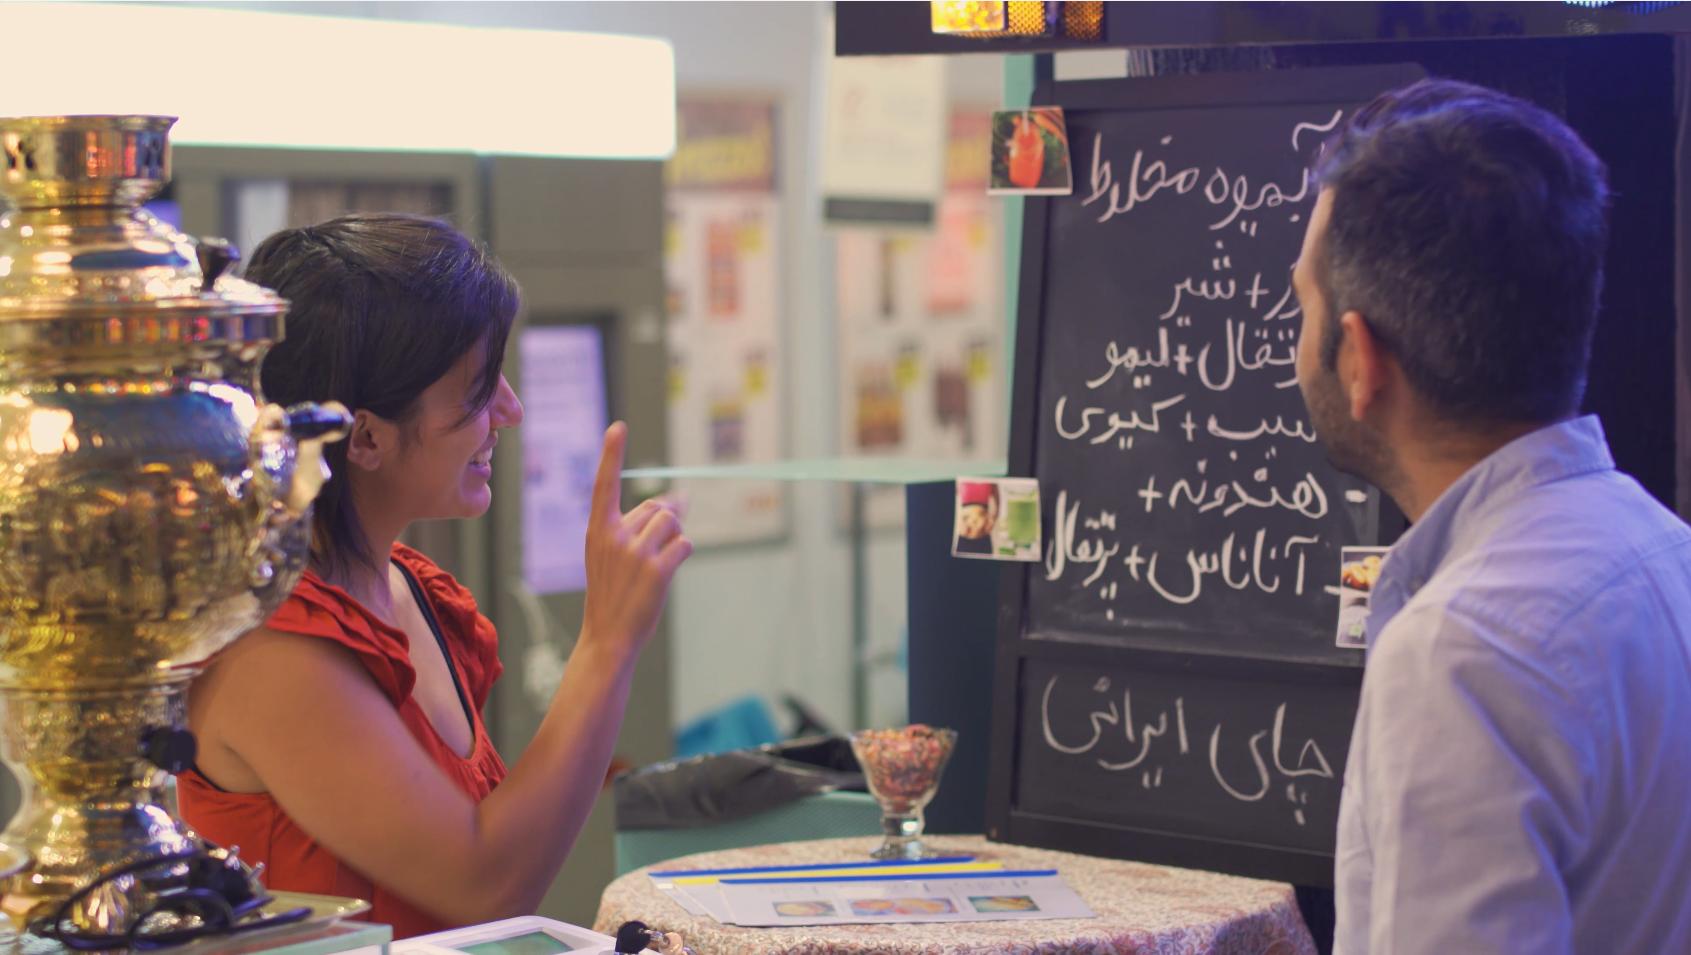 Una ragazza indica una lavagnetta con scritte in arabo al bancone di un bar, il barista la ascolta